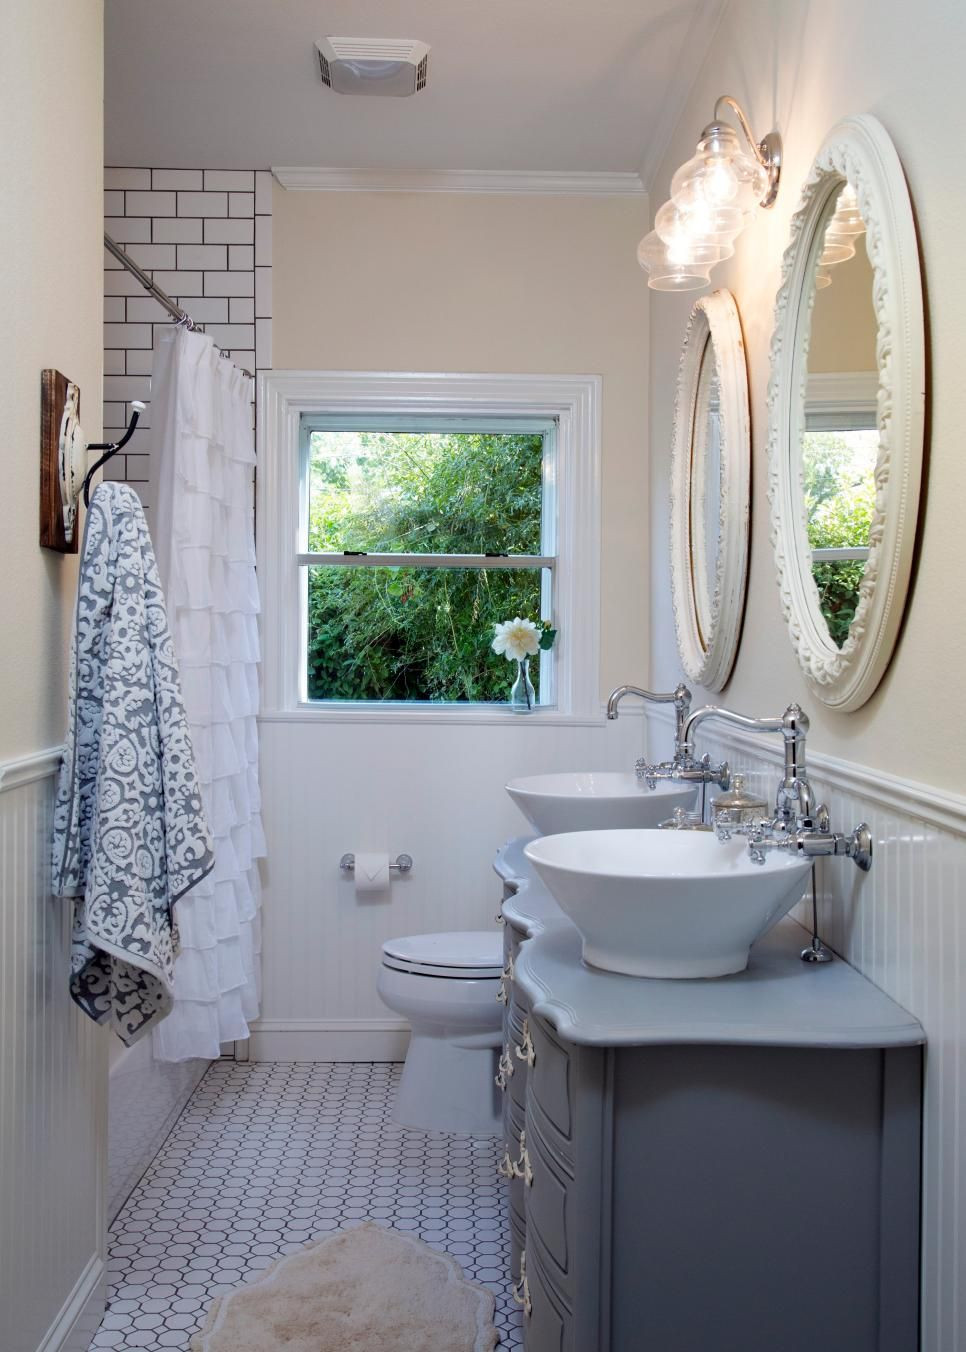 Joanna Gaines Bathroom Design
 Fixer Upper s Best Bathroom Flips